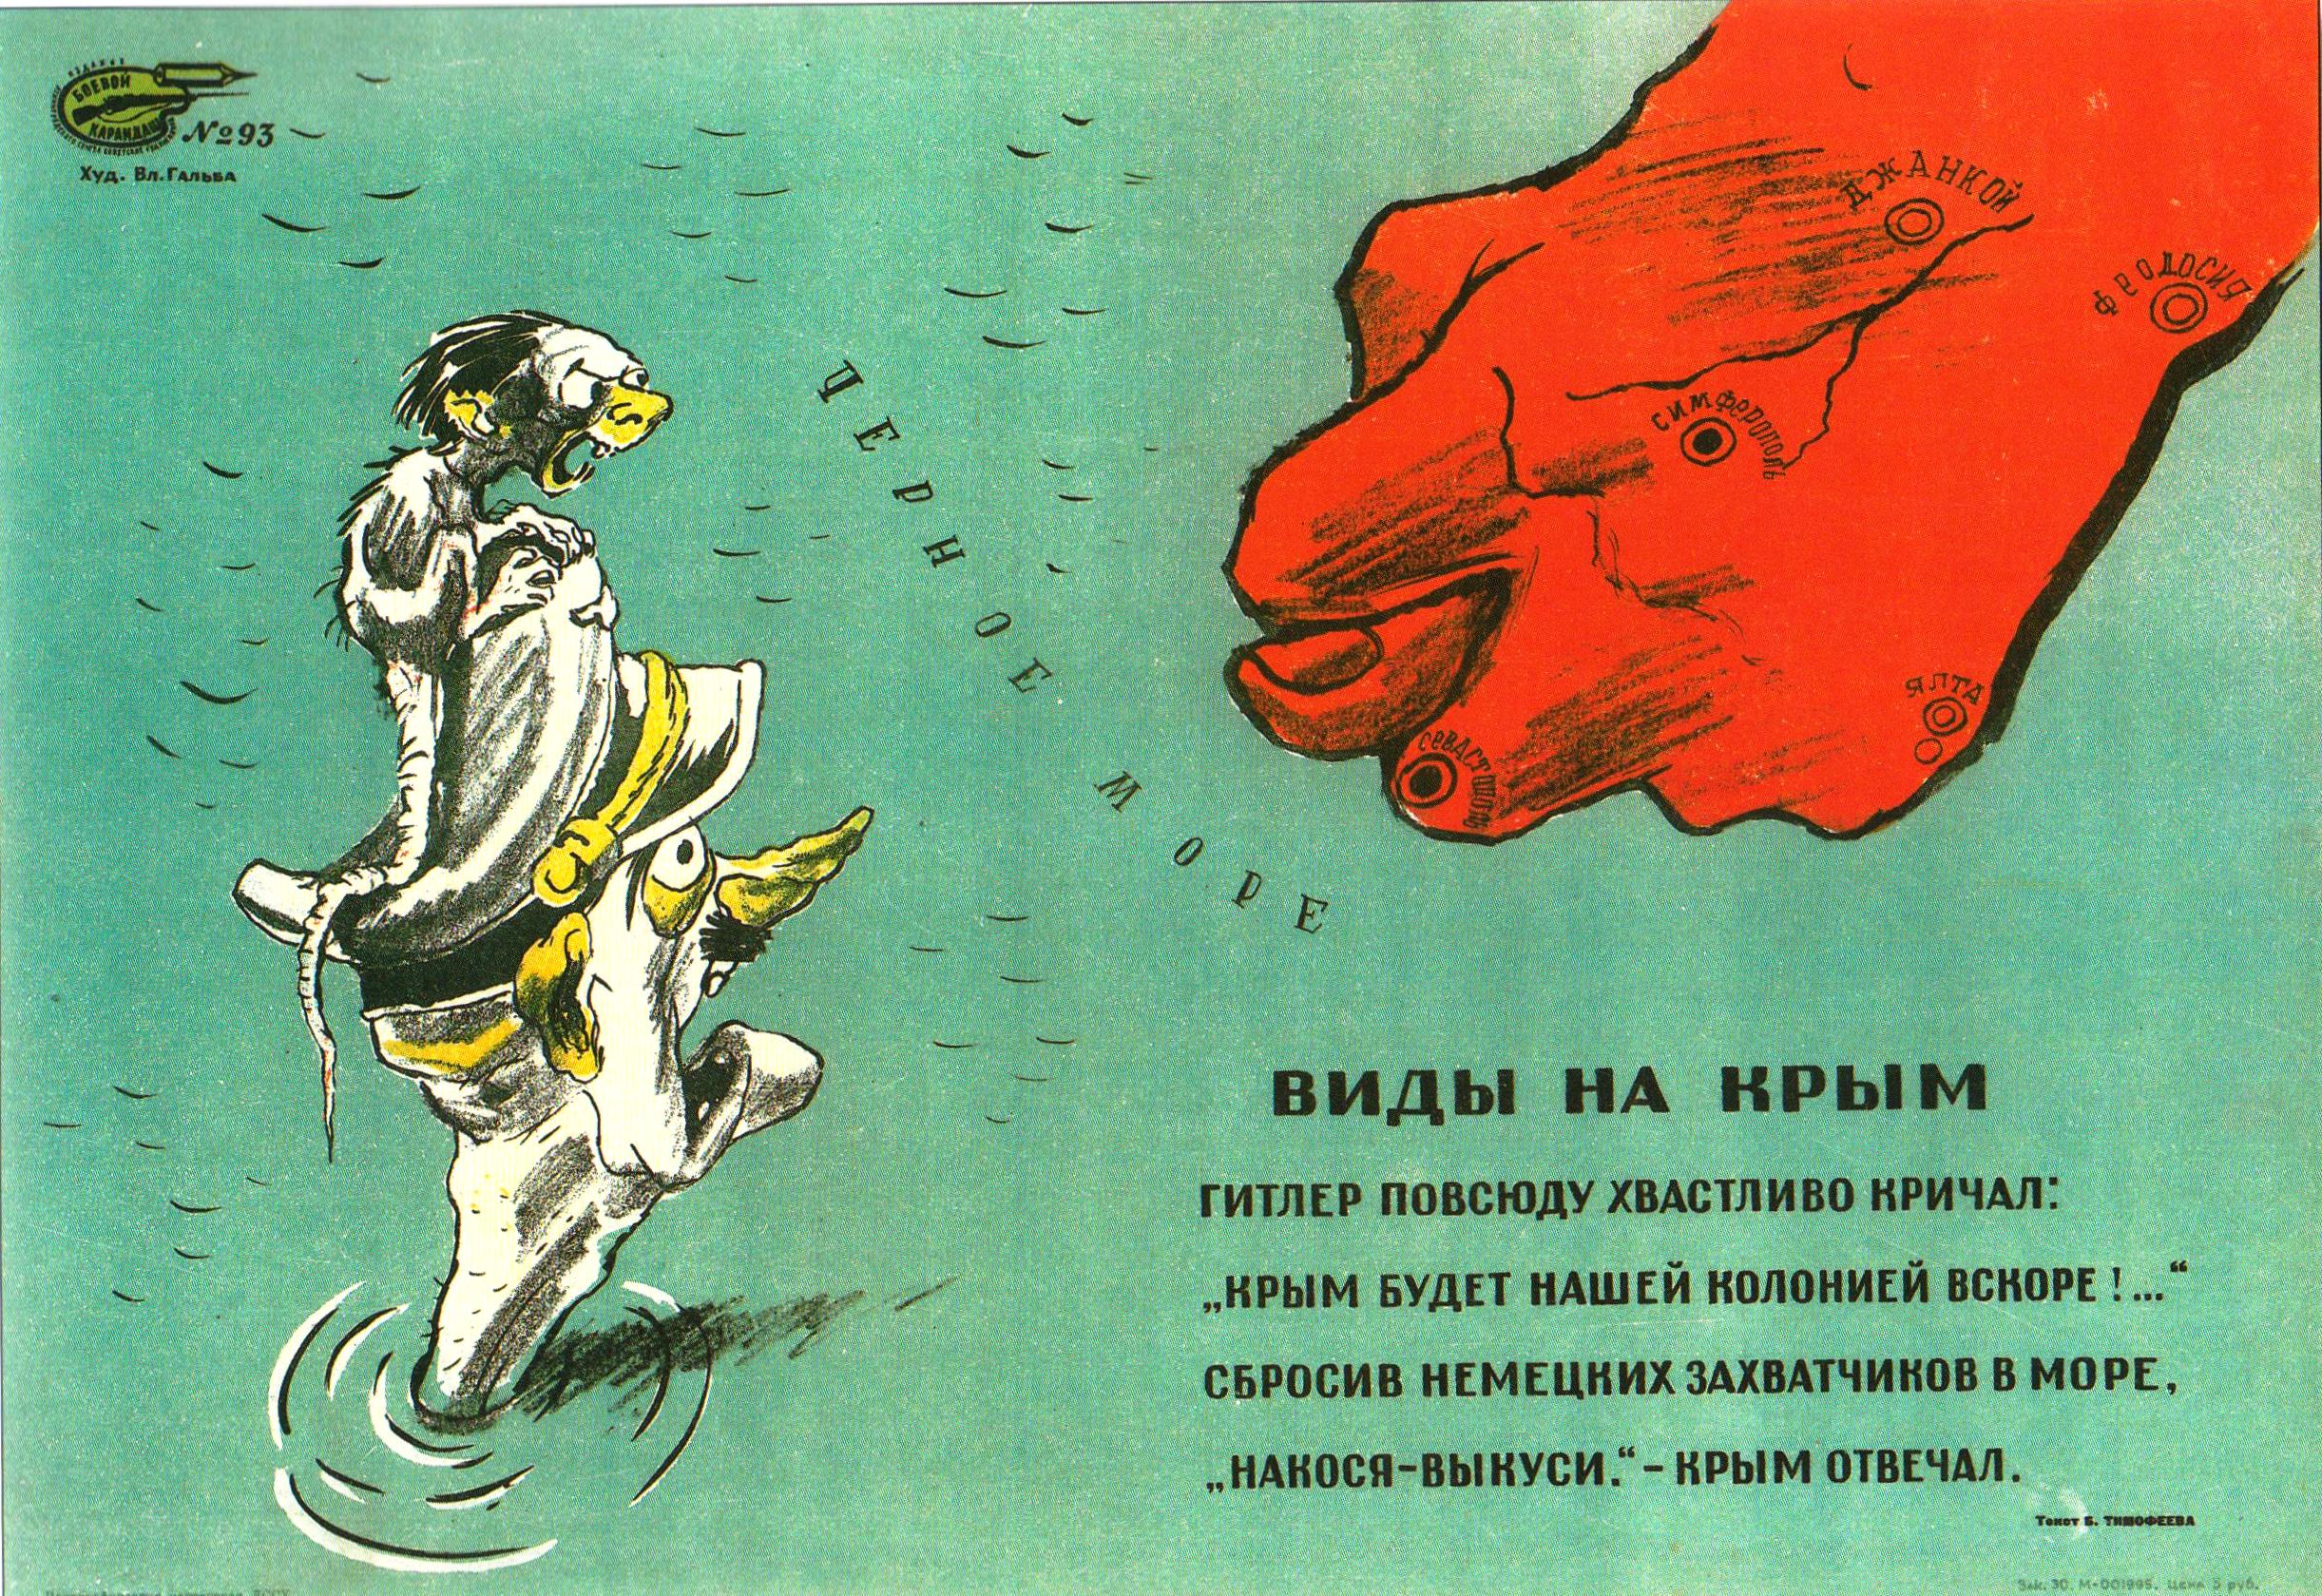 URSS 1944 Vues de la Crimee. affiche de Galba